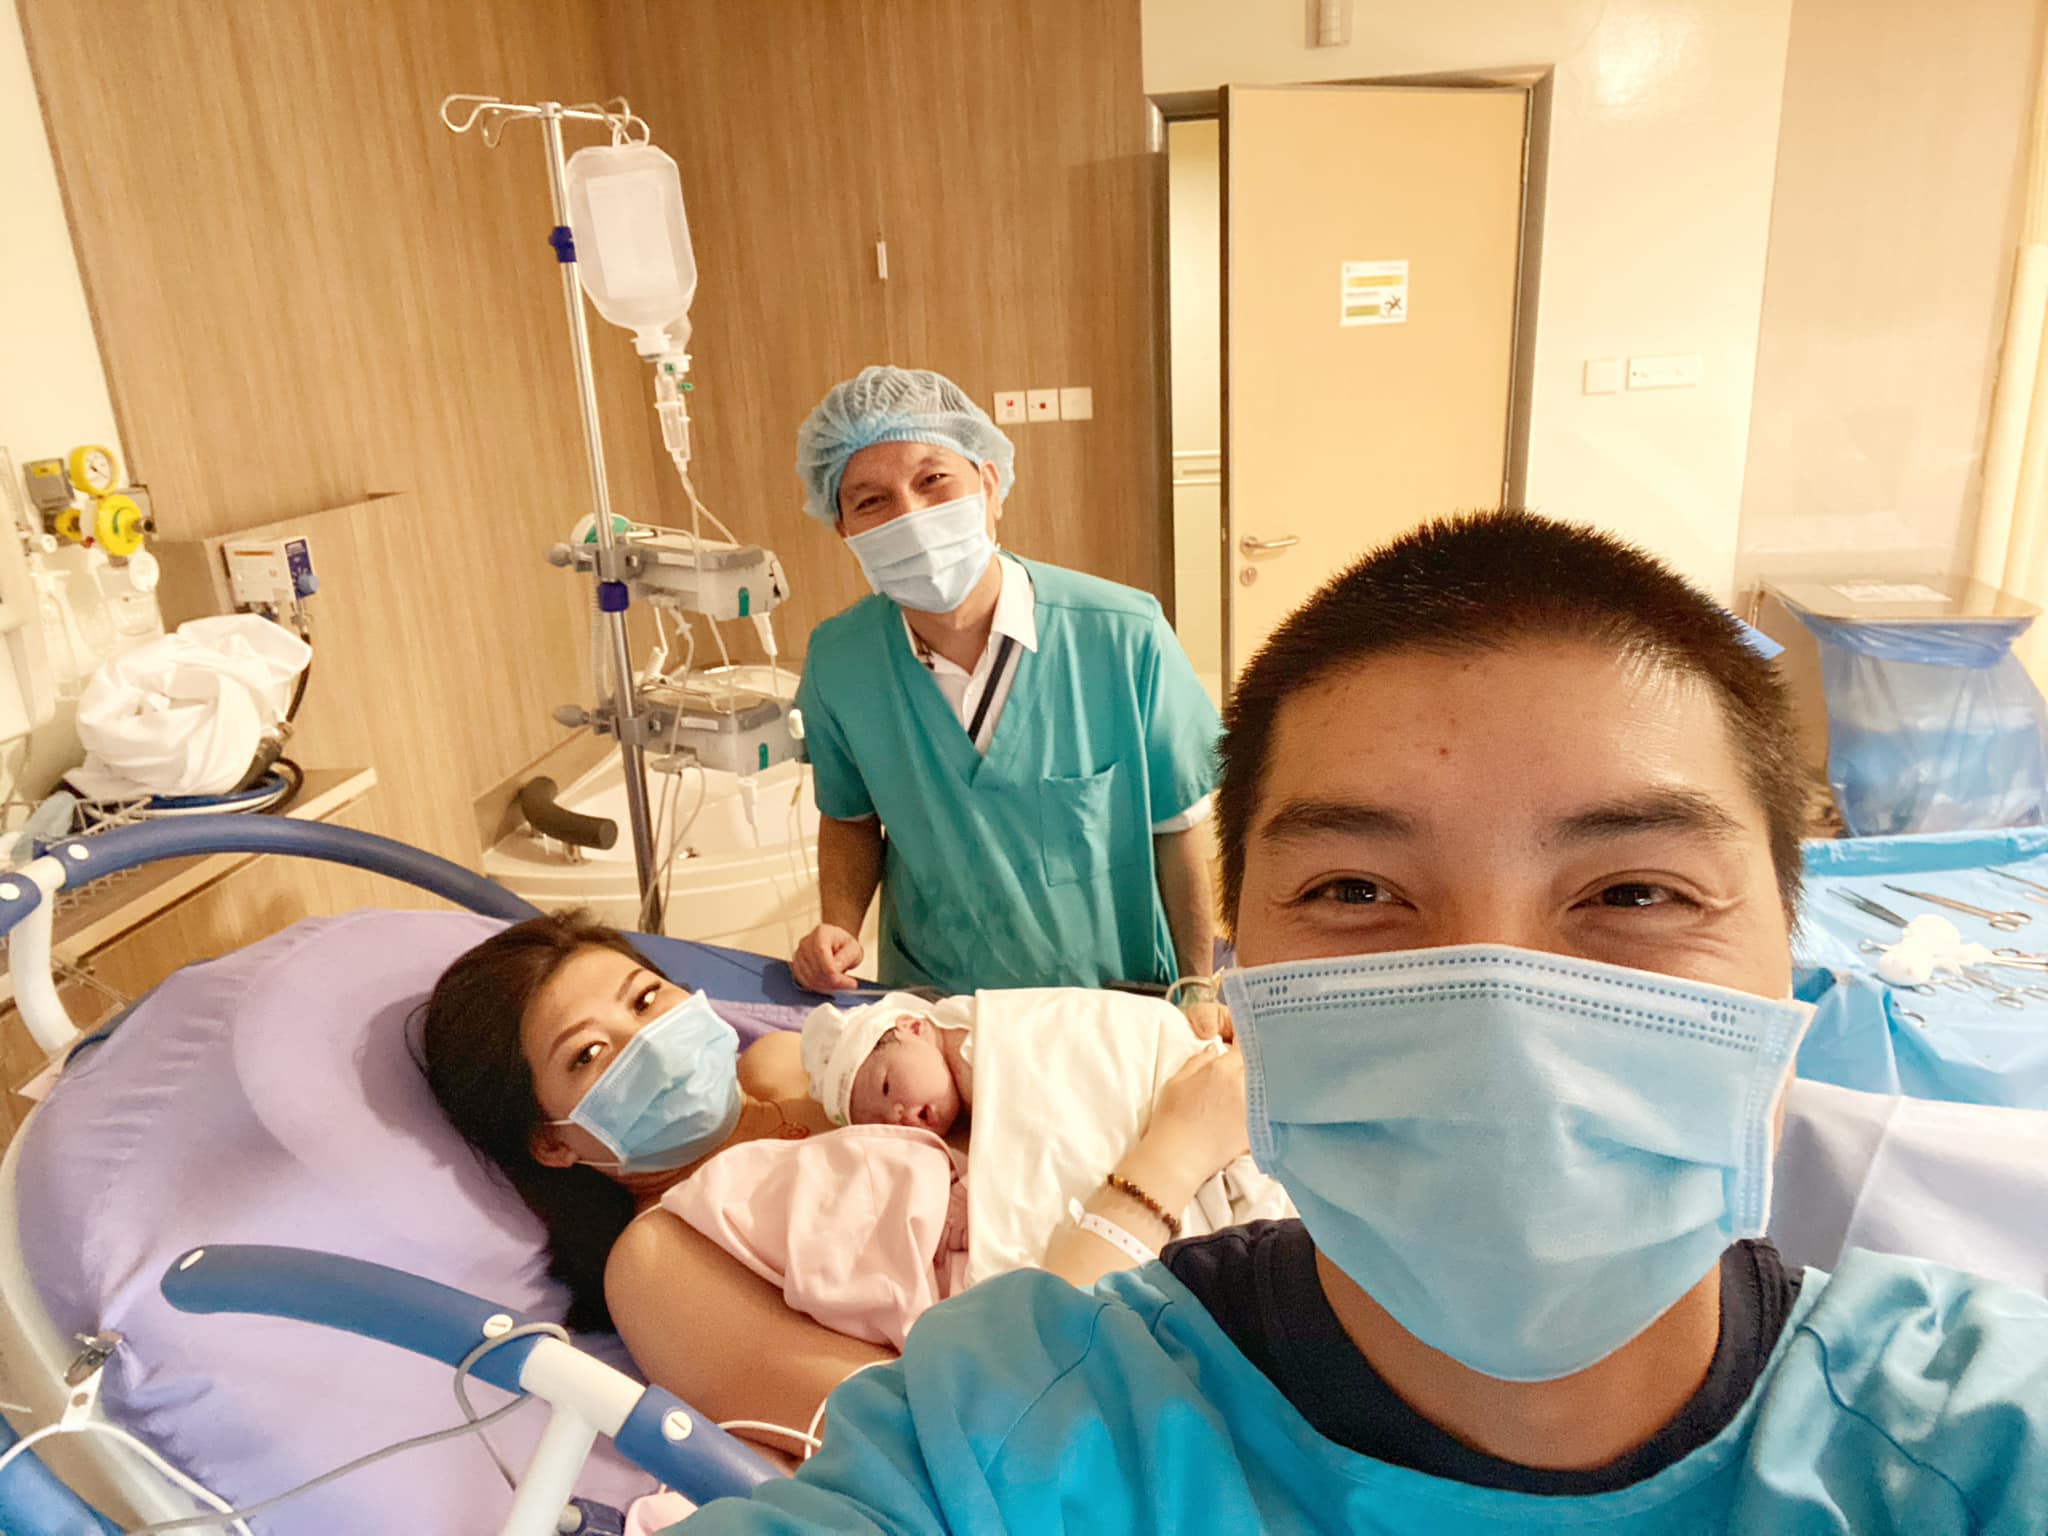 Quý Ròm - Ngọc Trai thông báo bà xã vừa hạ sinh con gái thứ 2: Dàn sao Việt kéo vào chúc mừng